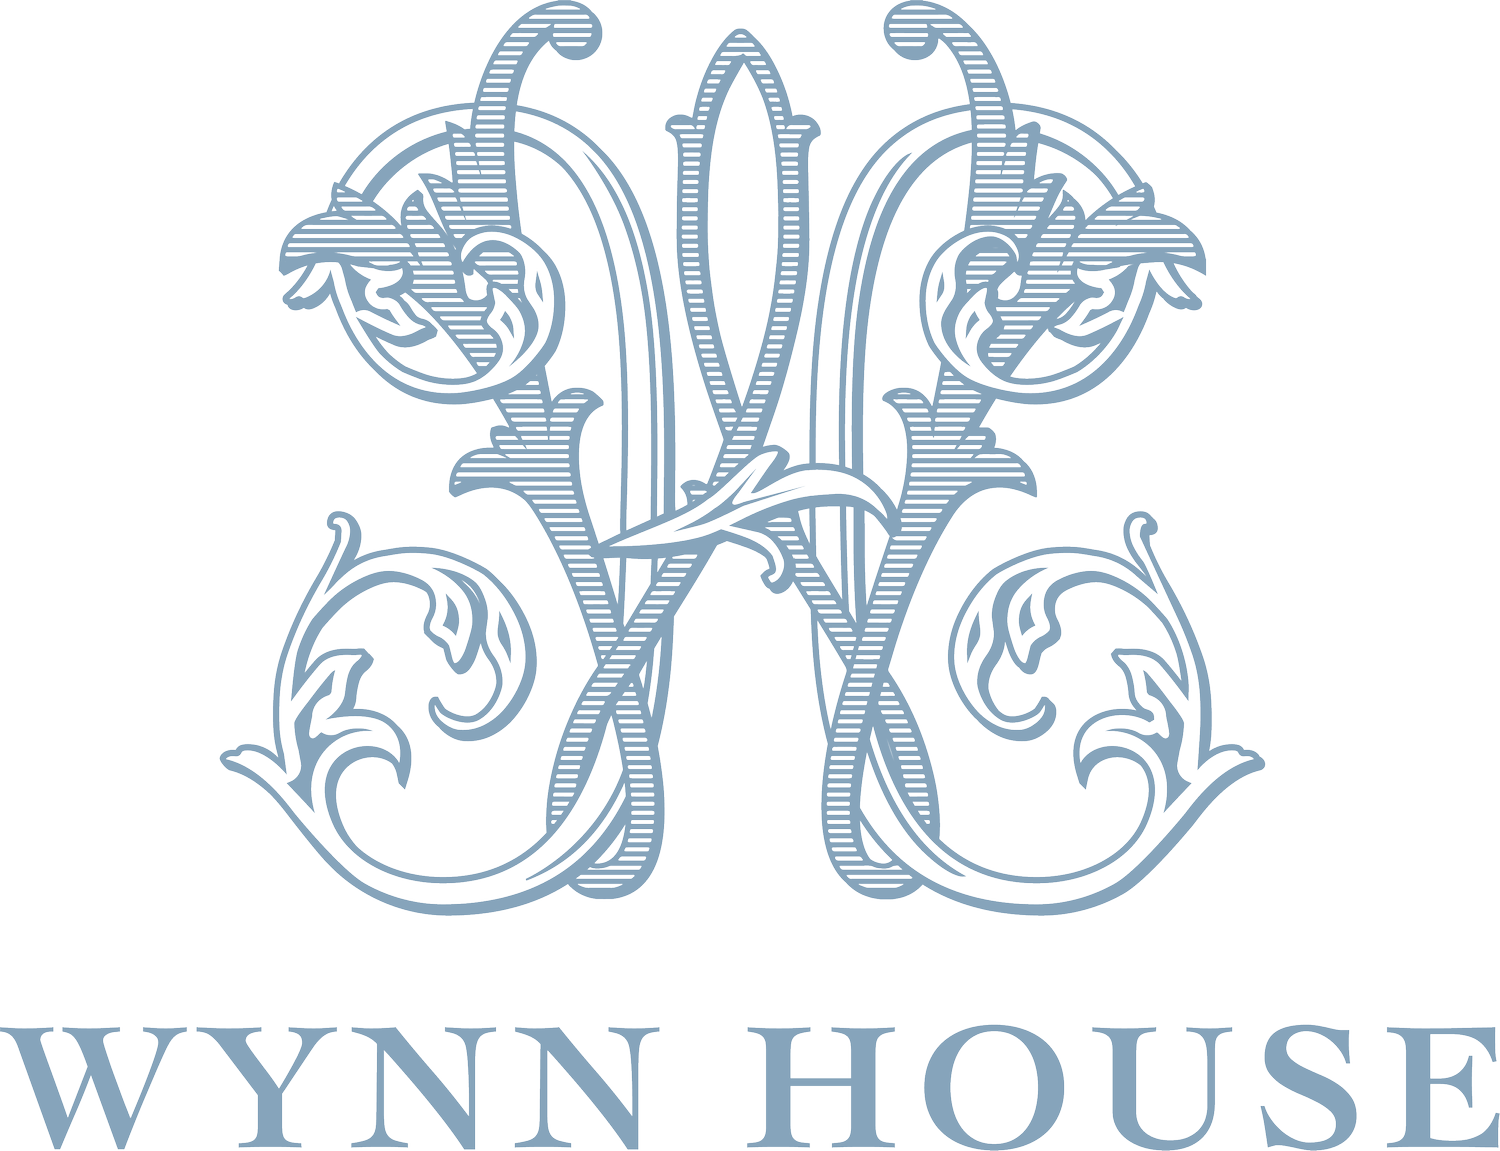 The Wynn House